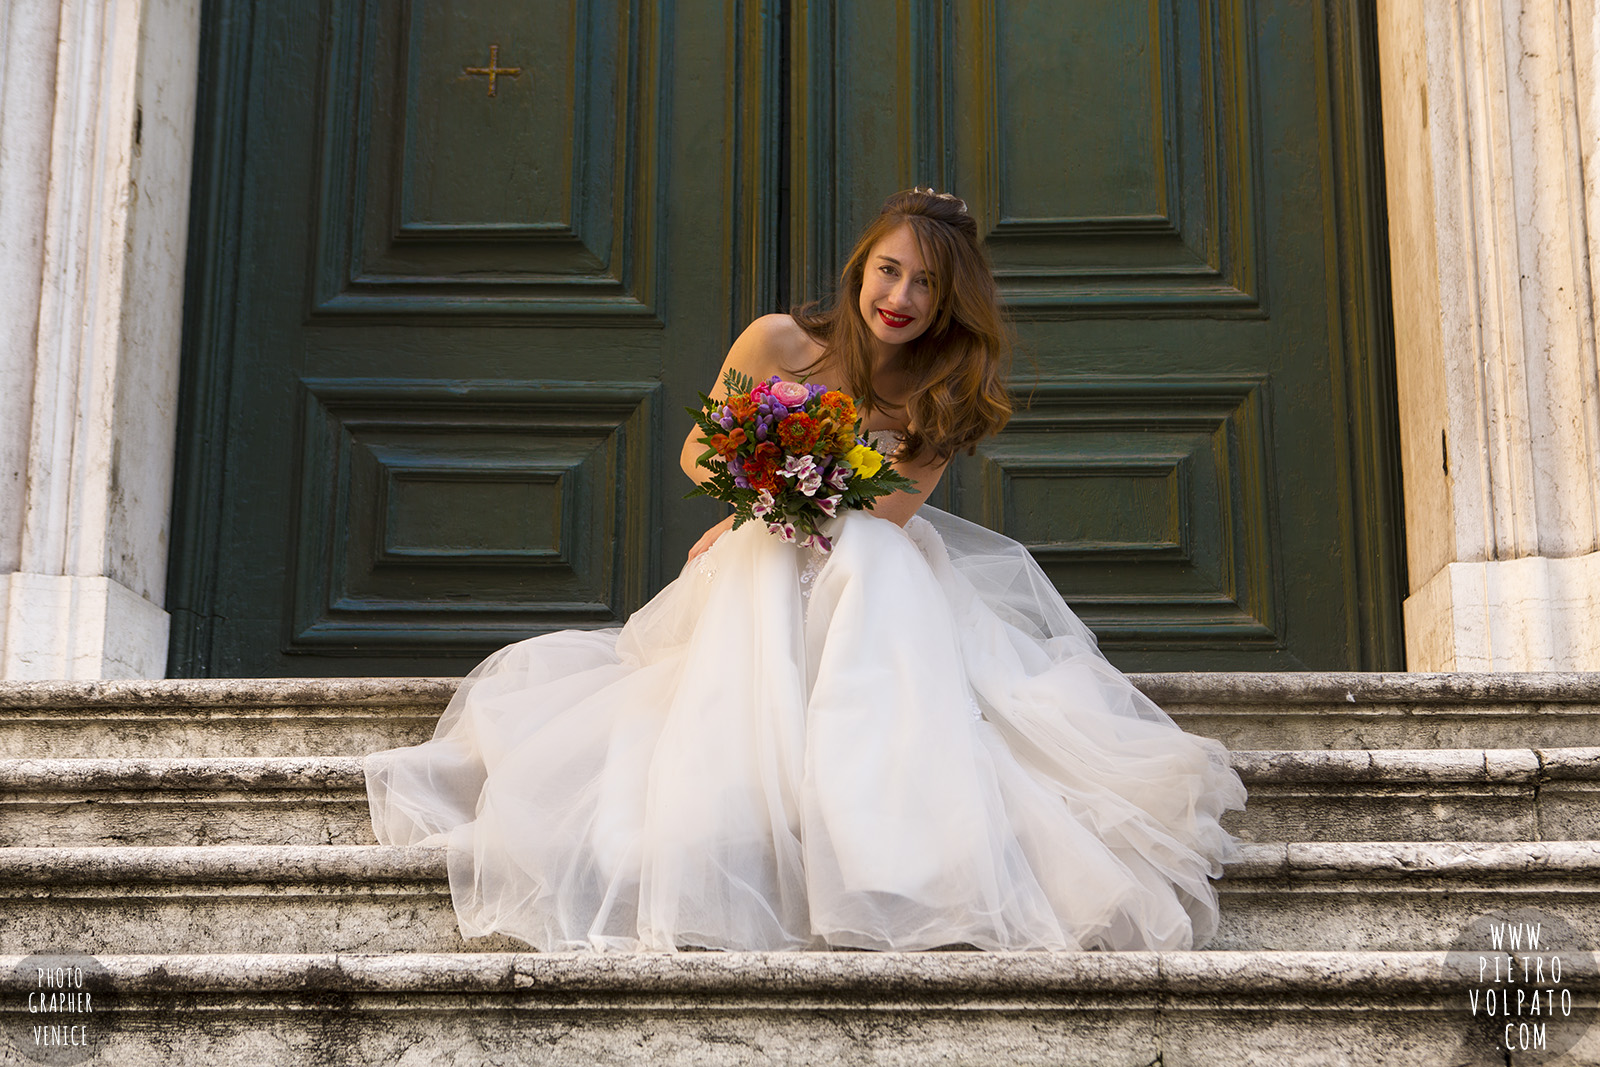 fotografo venezia viaggio di nozze luna di miele